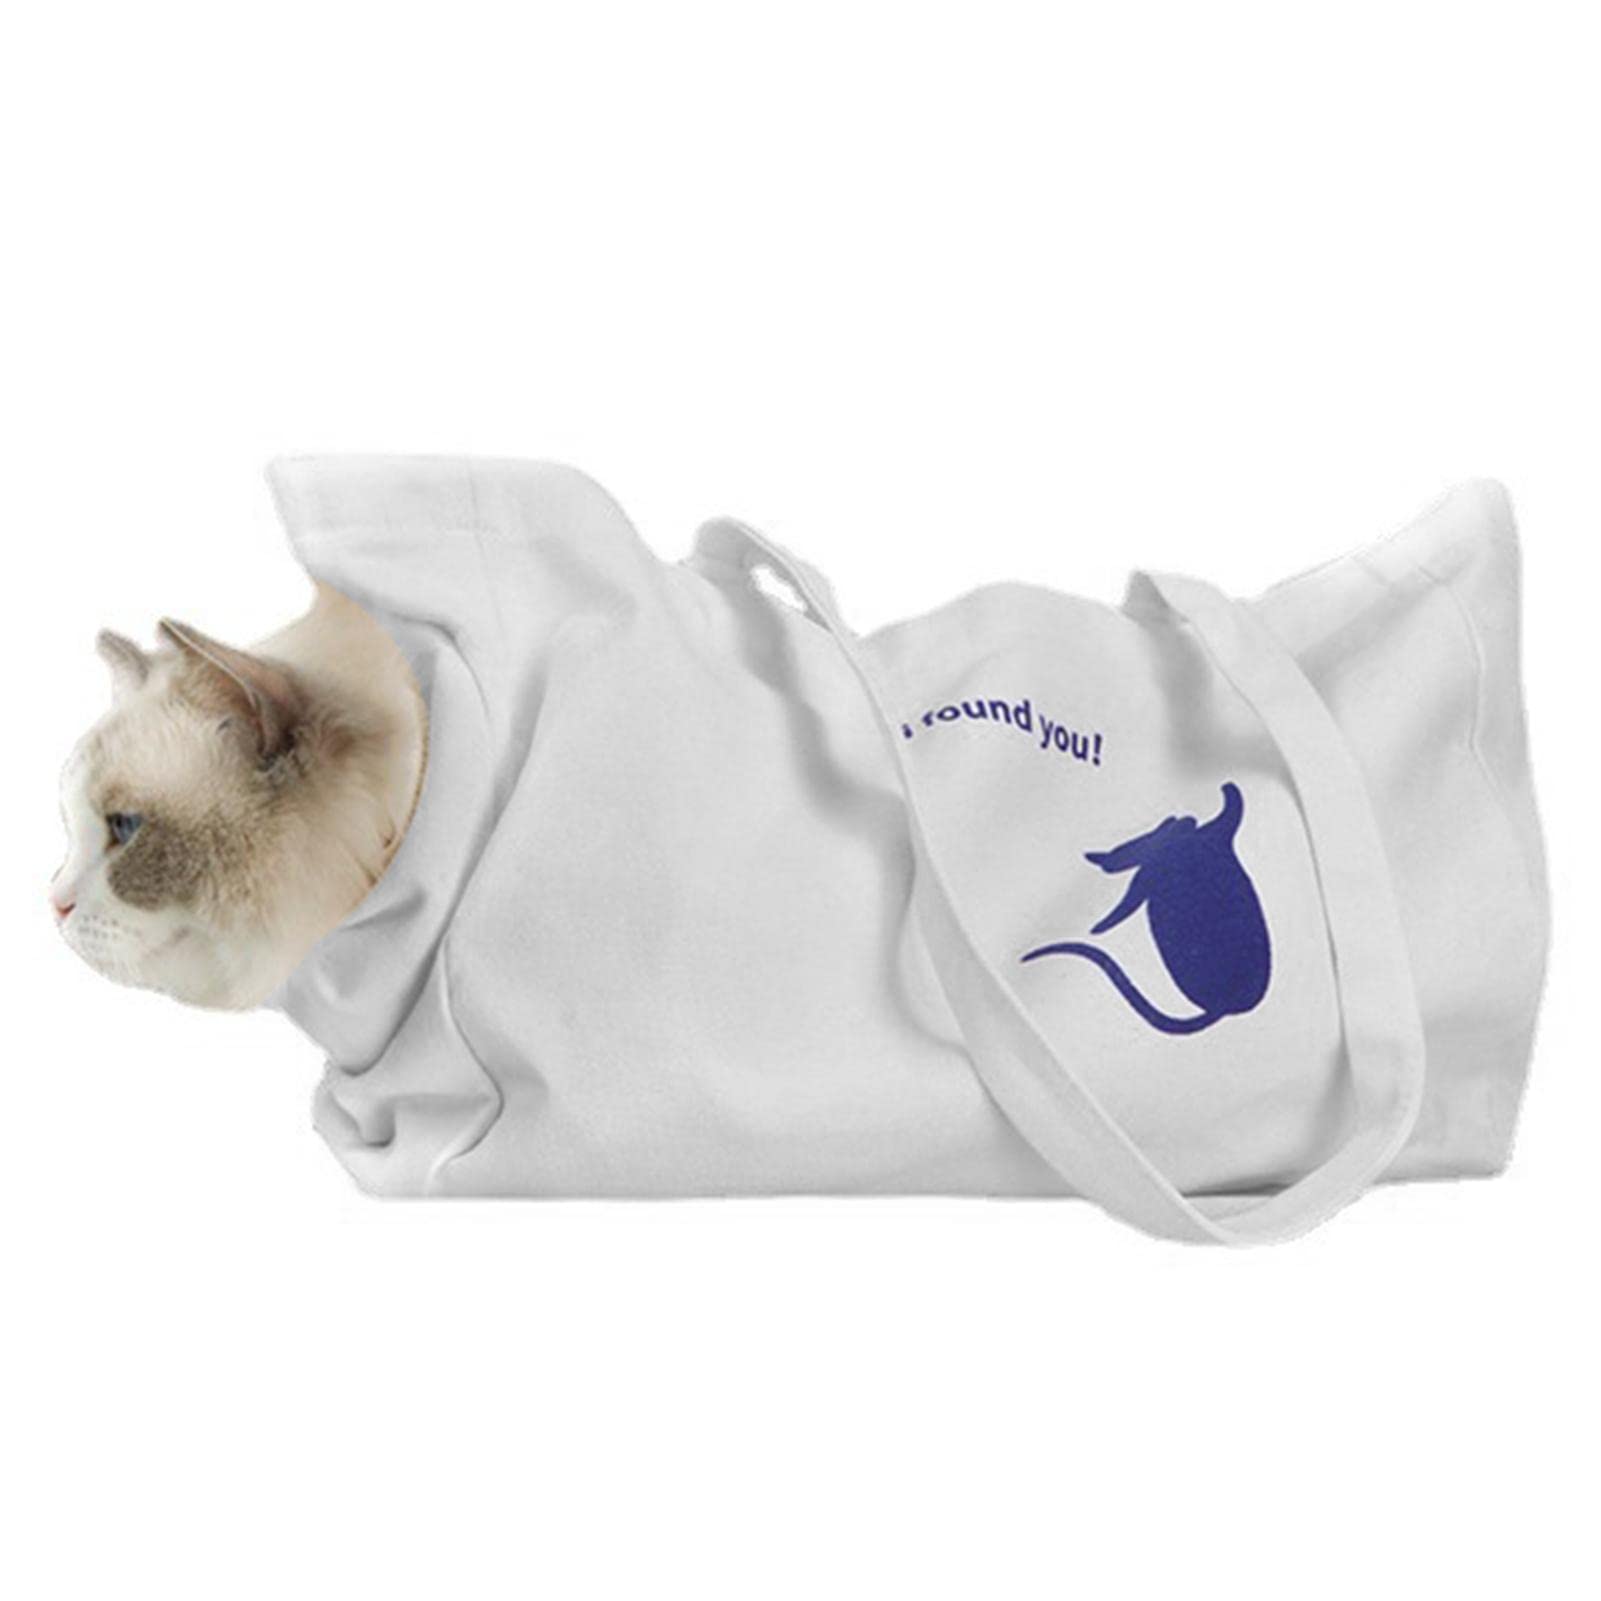 Abbto 5 Pcs Hundetragetaschen - Tragbarer Taschenträger Haustierrucksack für Katzen, Hunde, Welpen, Kätzchen,Schulterrucksack für Hunde und Katzen zum Wandern, Radfahren und Reisen